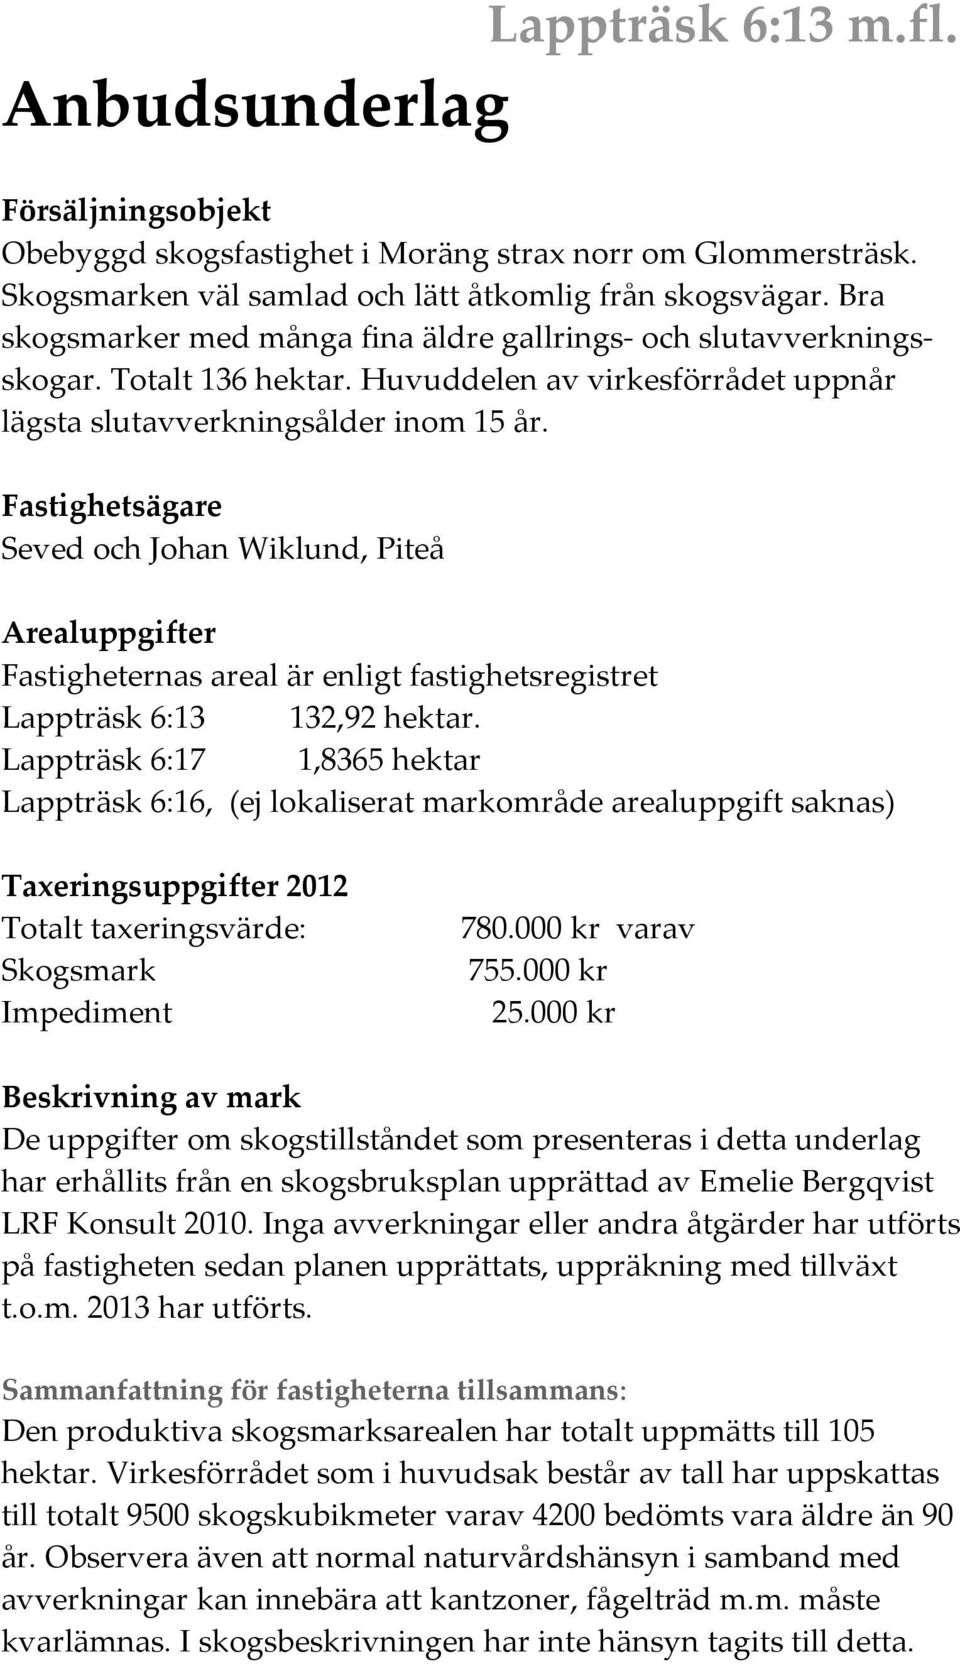 Fatighetägare Seved och Johan Wiklund, Piteå uppgifter Fatigheterna areal är enligt fatighetregitret Lappträk :,9 hektar.